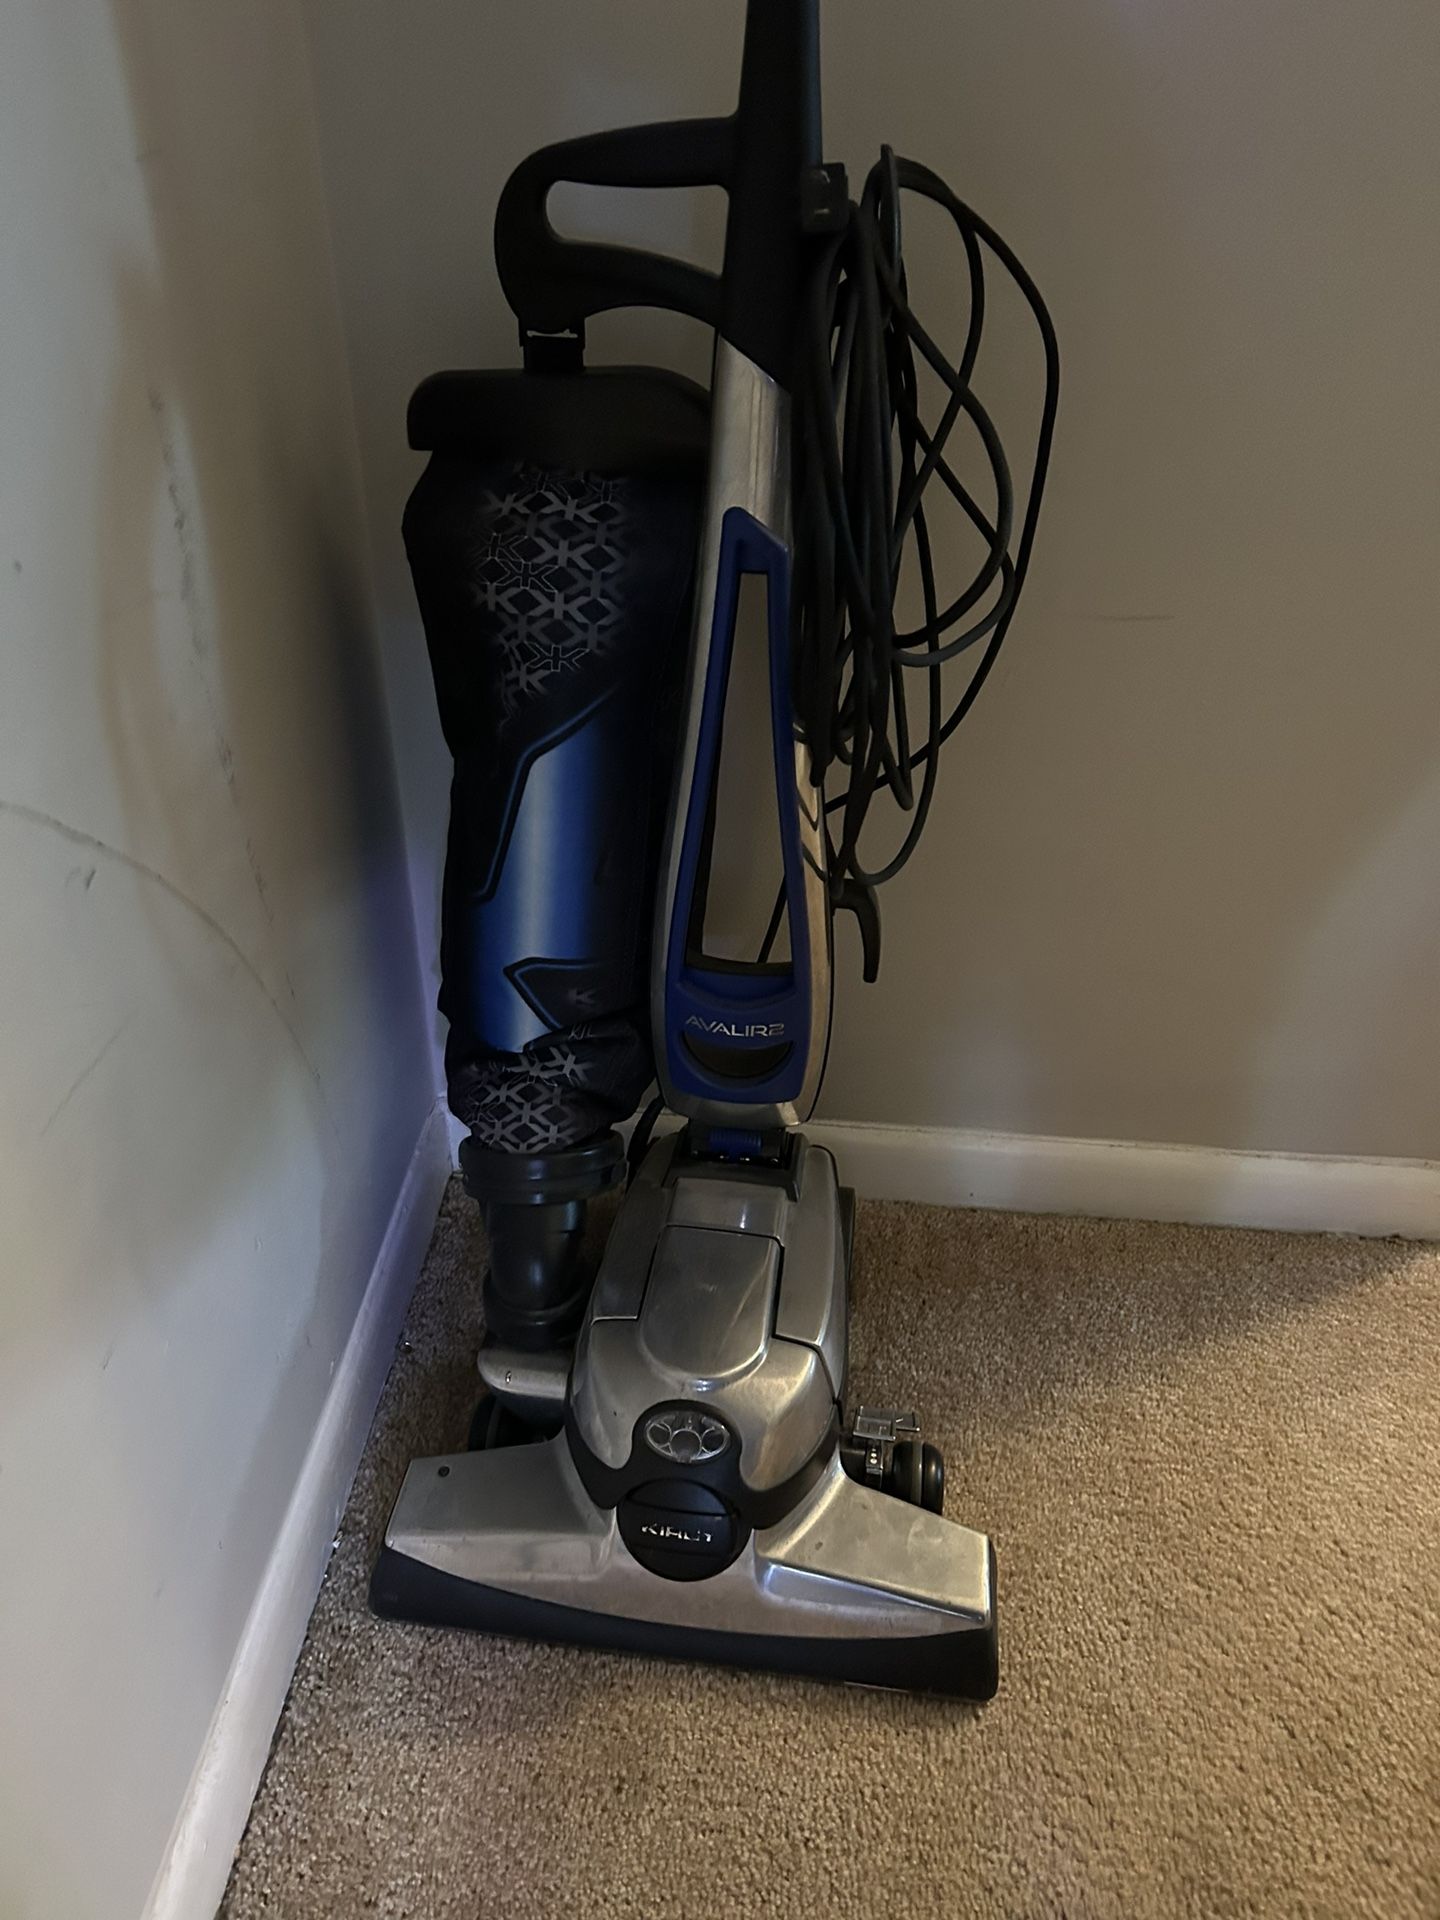 Kirby Vacuum Cleaner 2022 Avalir2